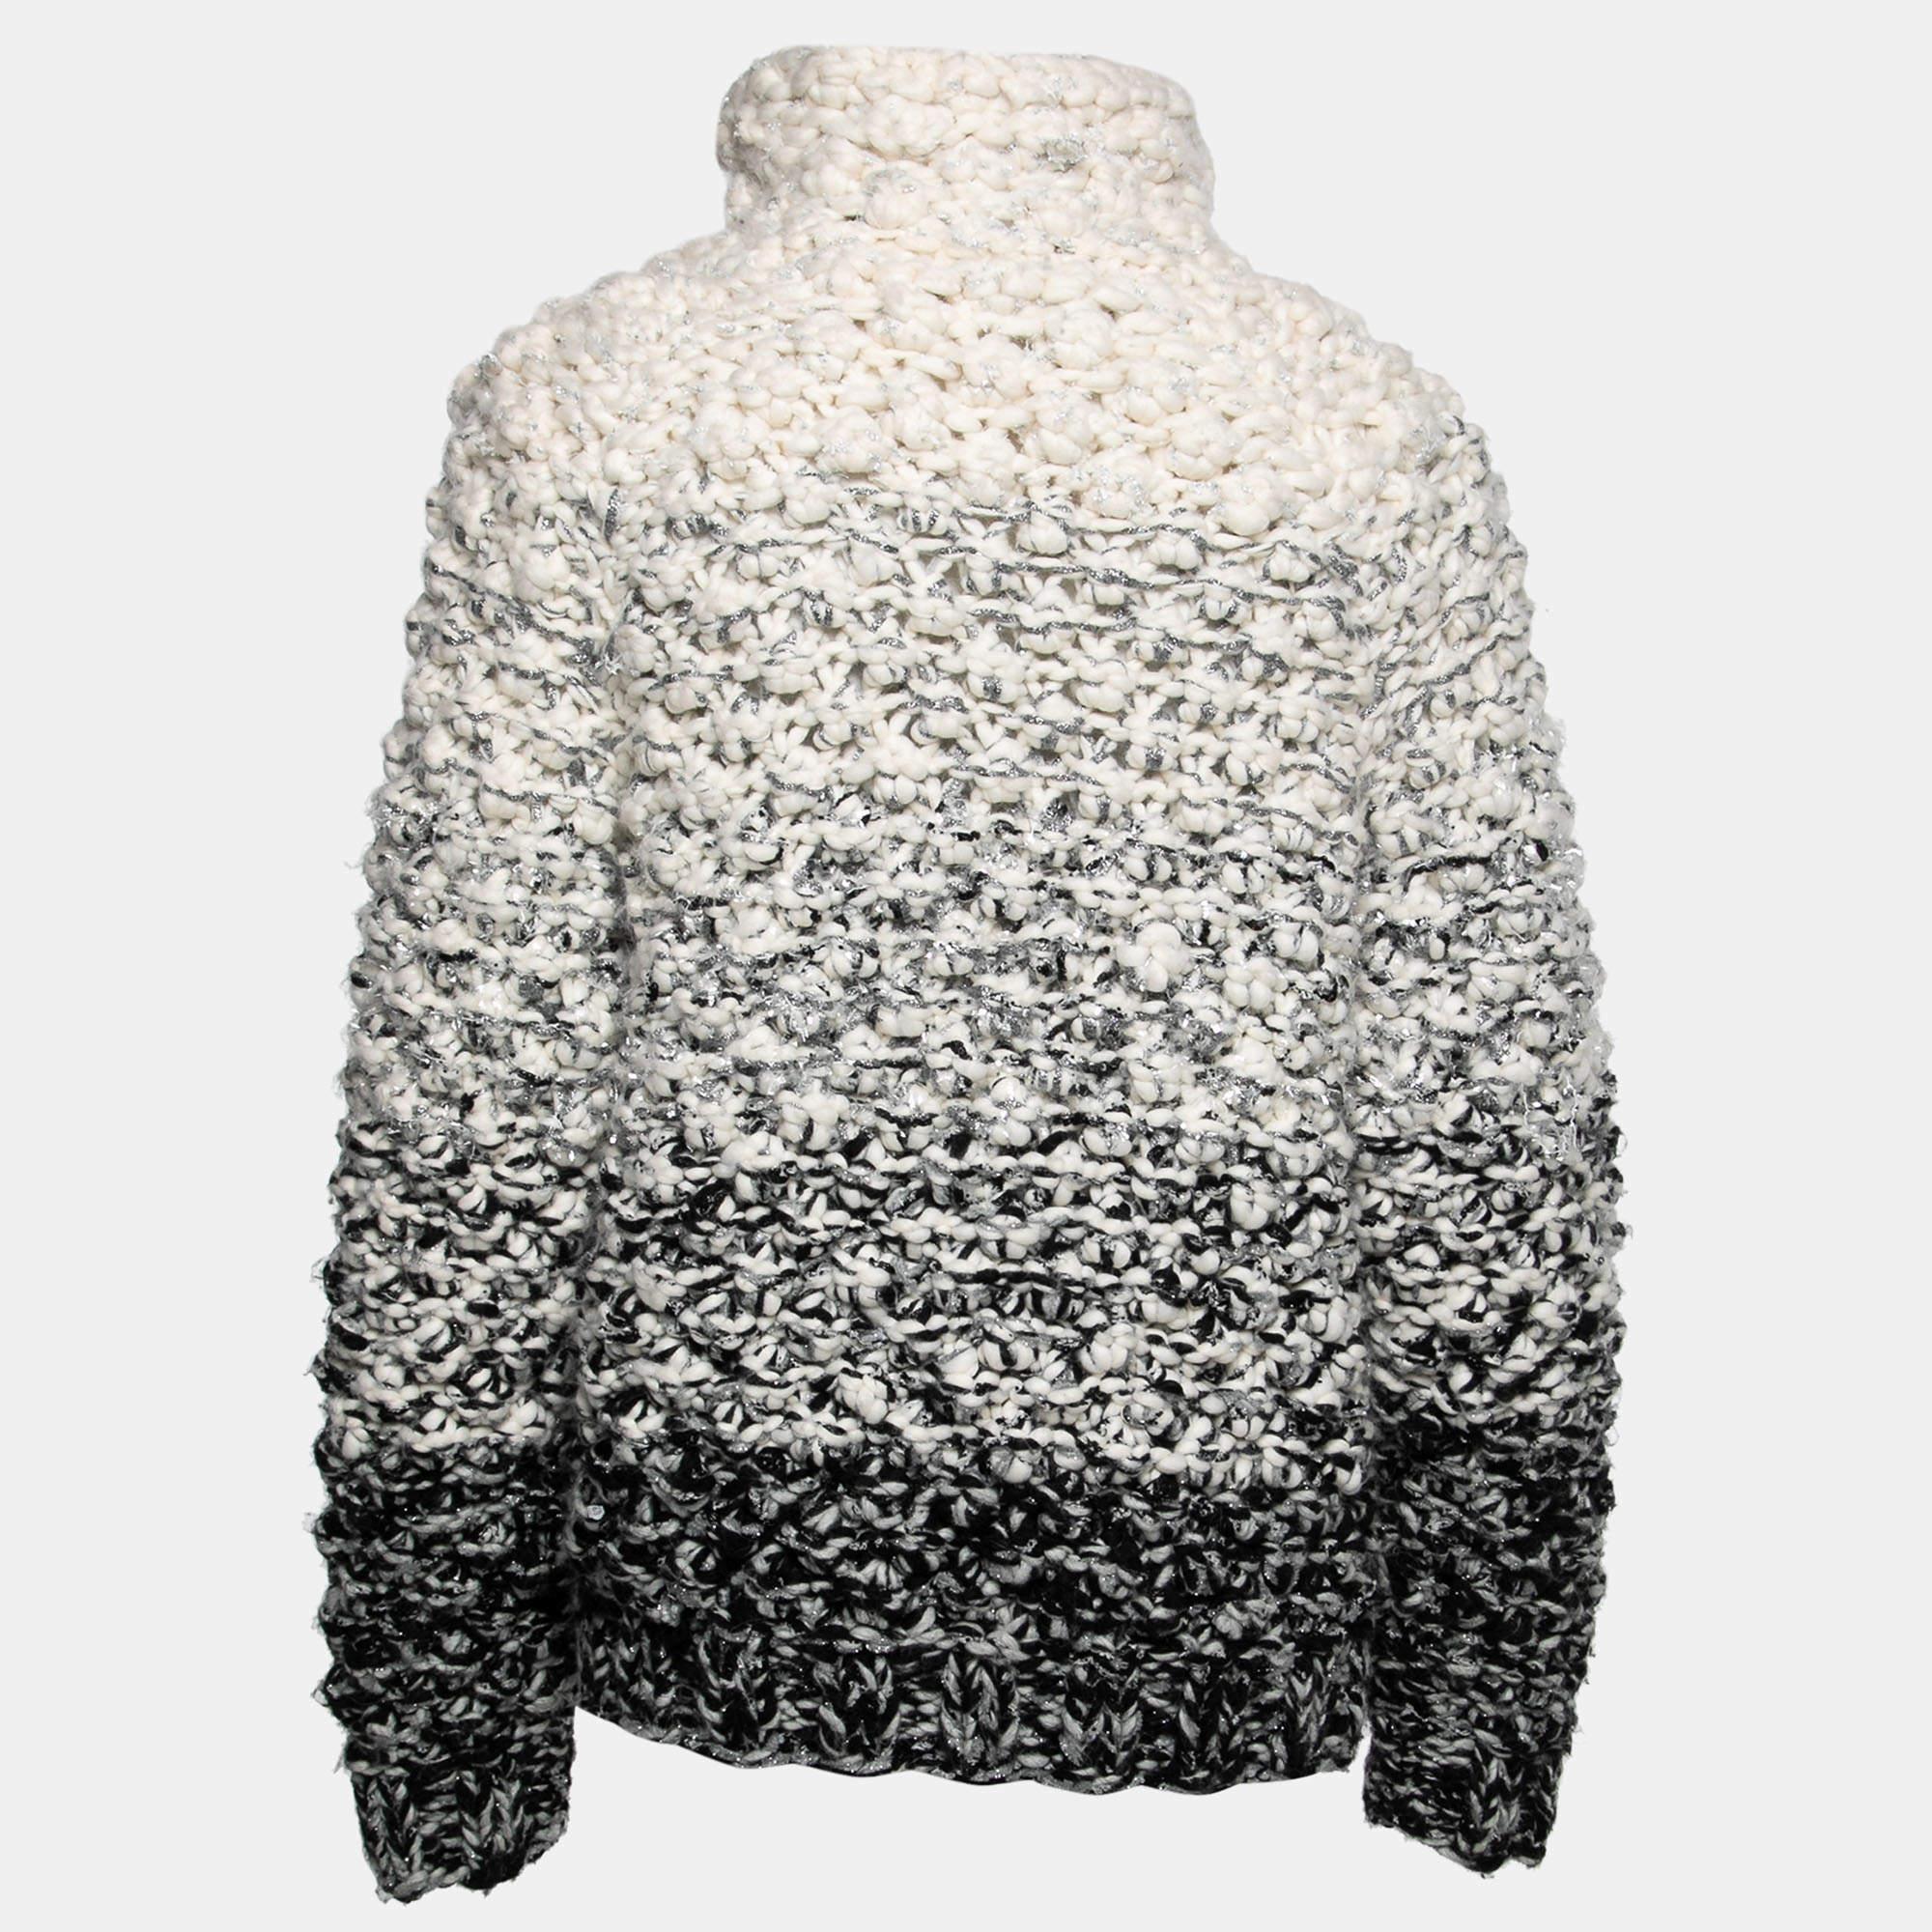 Profitez de vos sorties hivernales confortablement et douillettement en portant ce pull. Fabriqué à partir d'un mélange de laine, ce pull vous procure une chaleur abondante et rehausse tout look hivernal sans effort.

